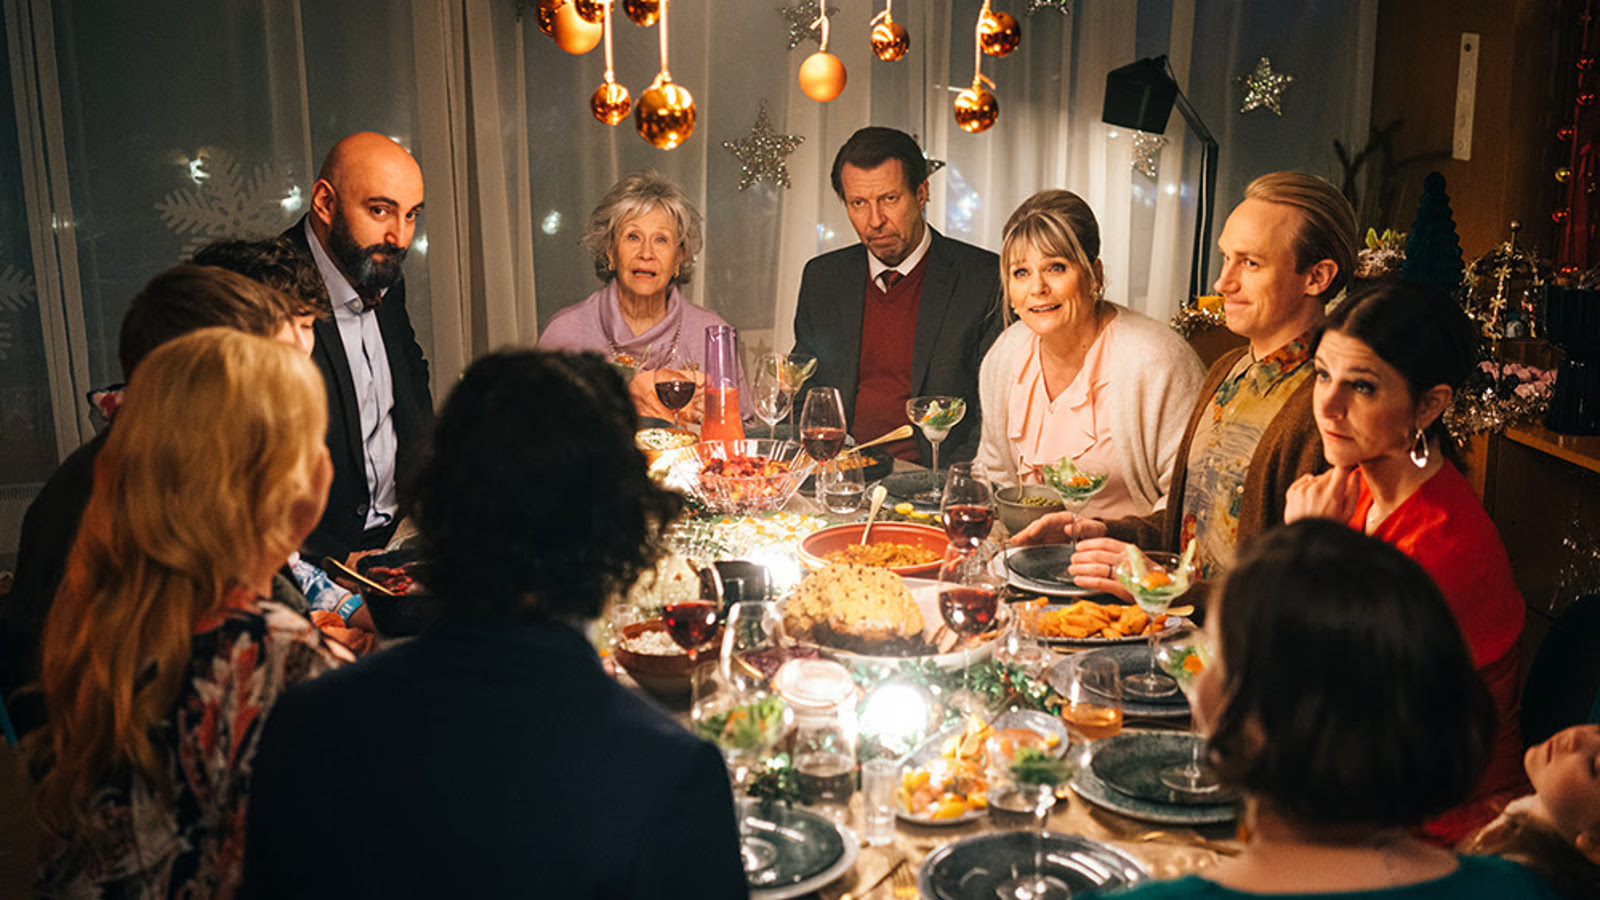 Kuvassa ovat kaikki näyttelijät joulupöydässä syömässä ja keskustelemassa.